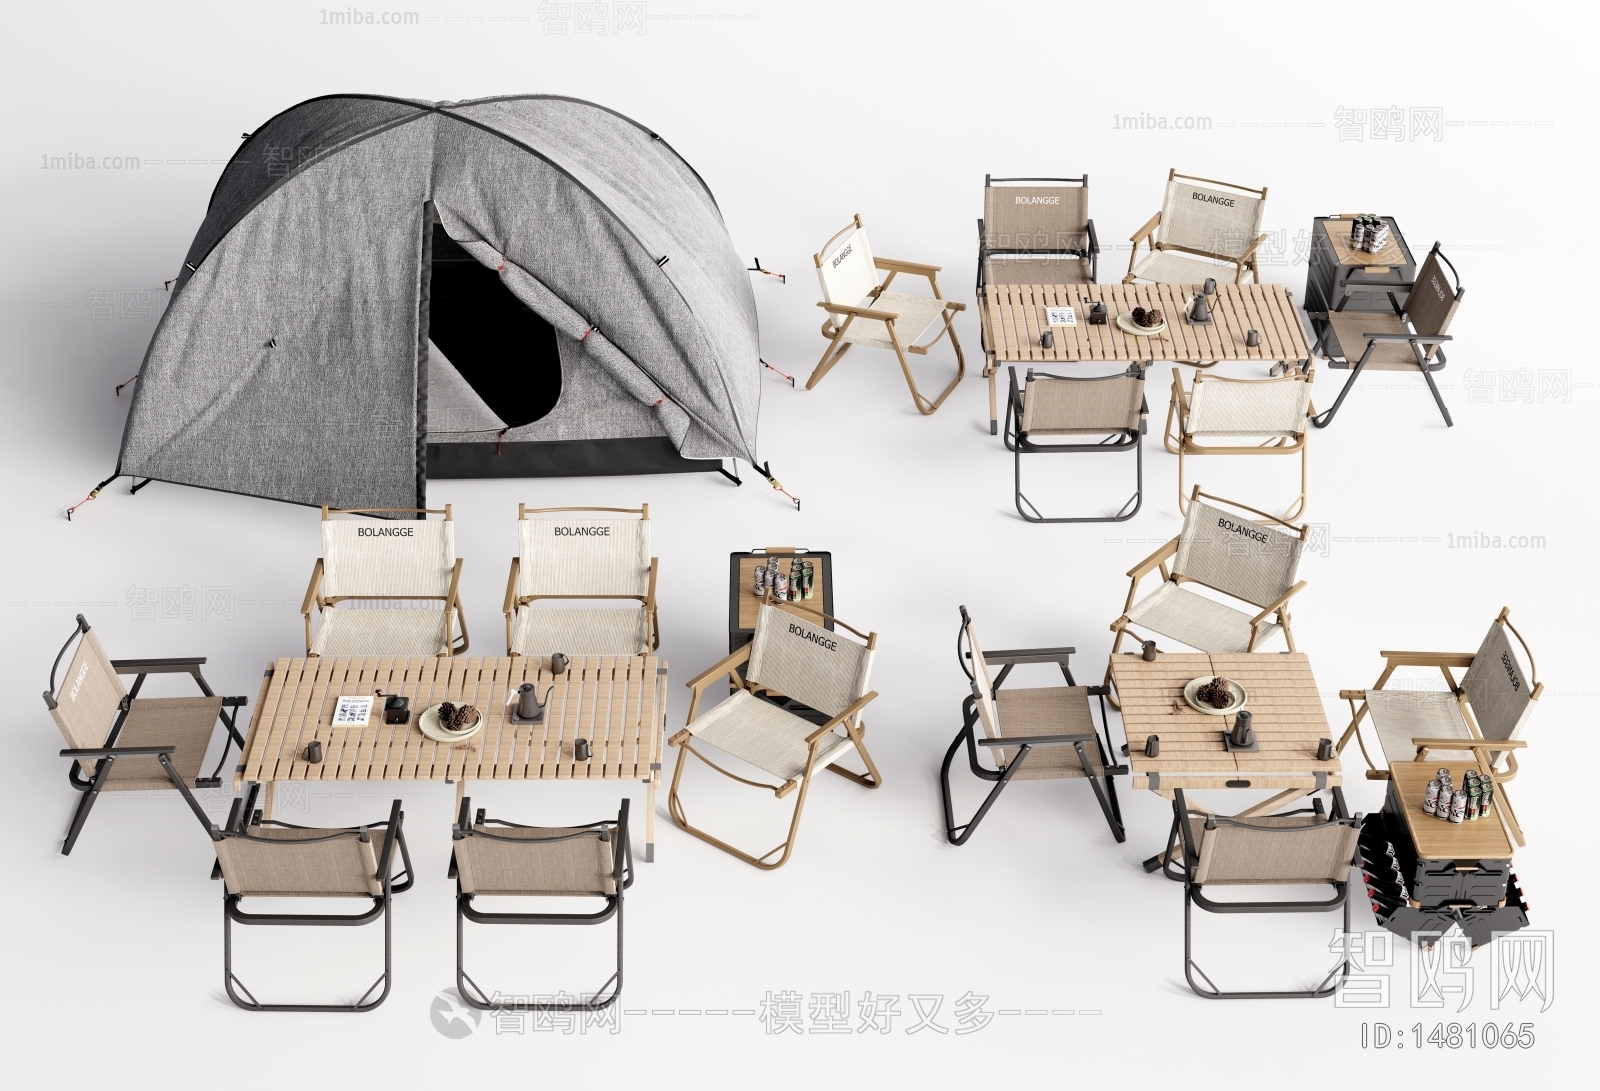 现代露营帐篷、户外露营桌椅